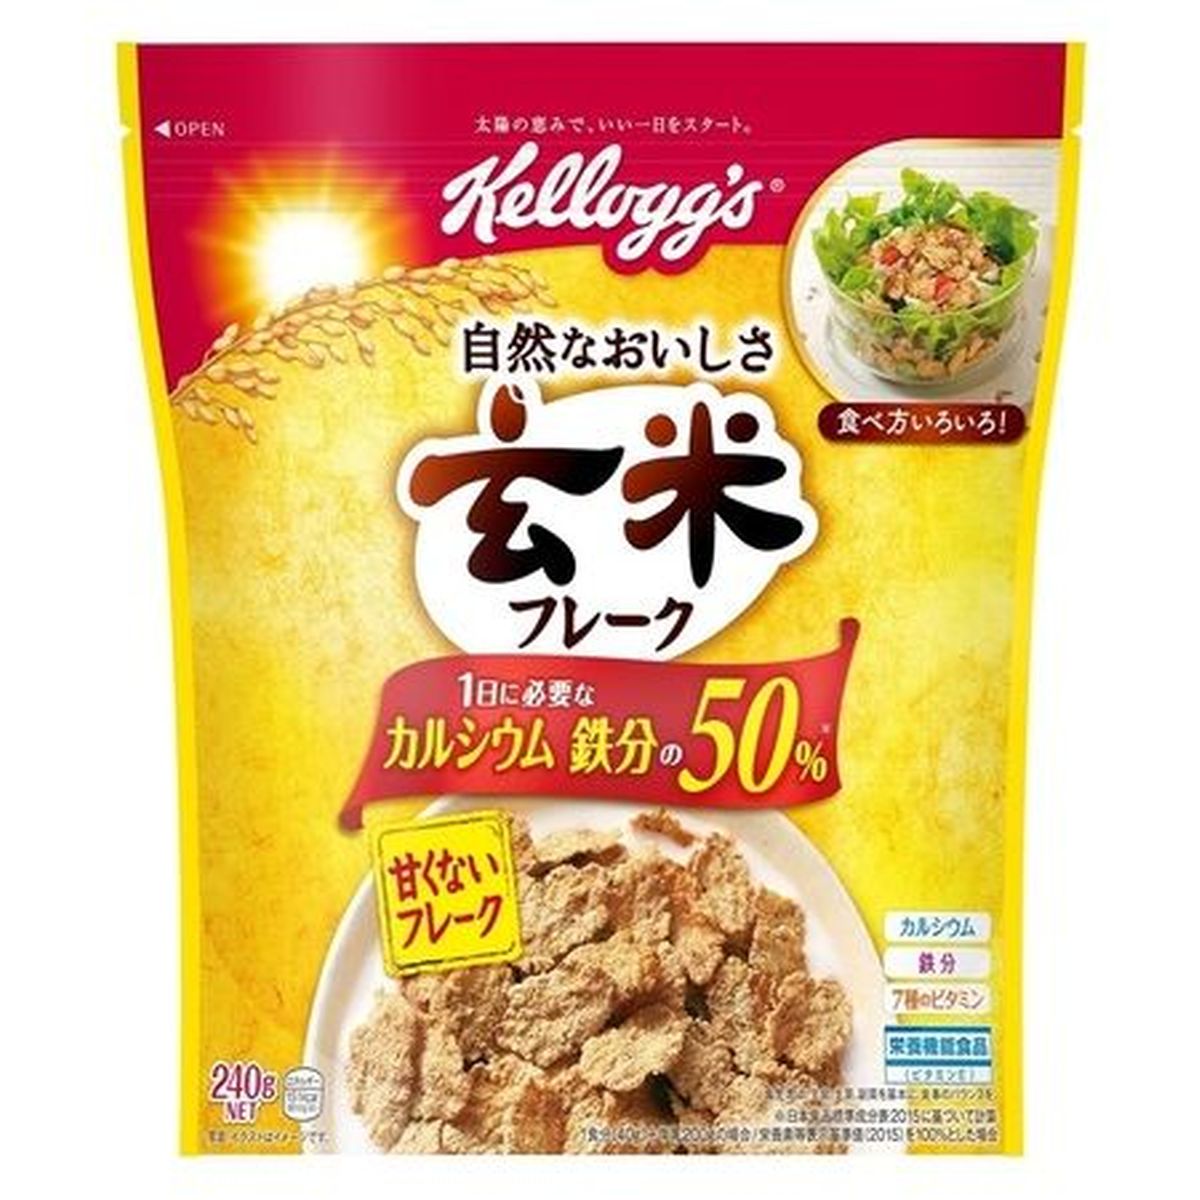 【6個入リ】日本ケロッグ 玄米フレーク 240g